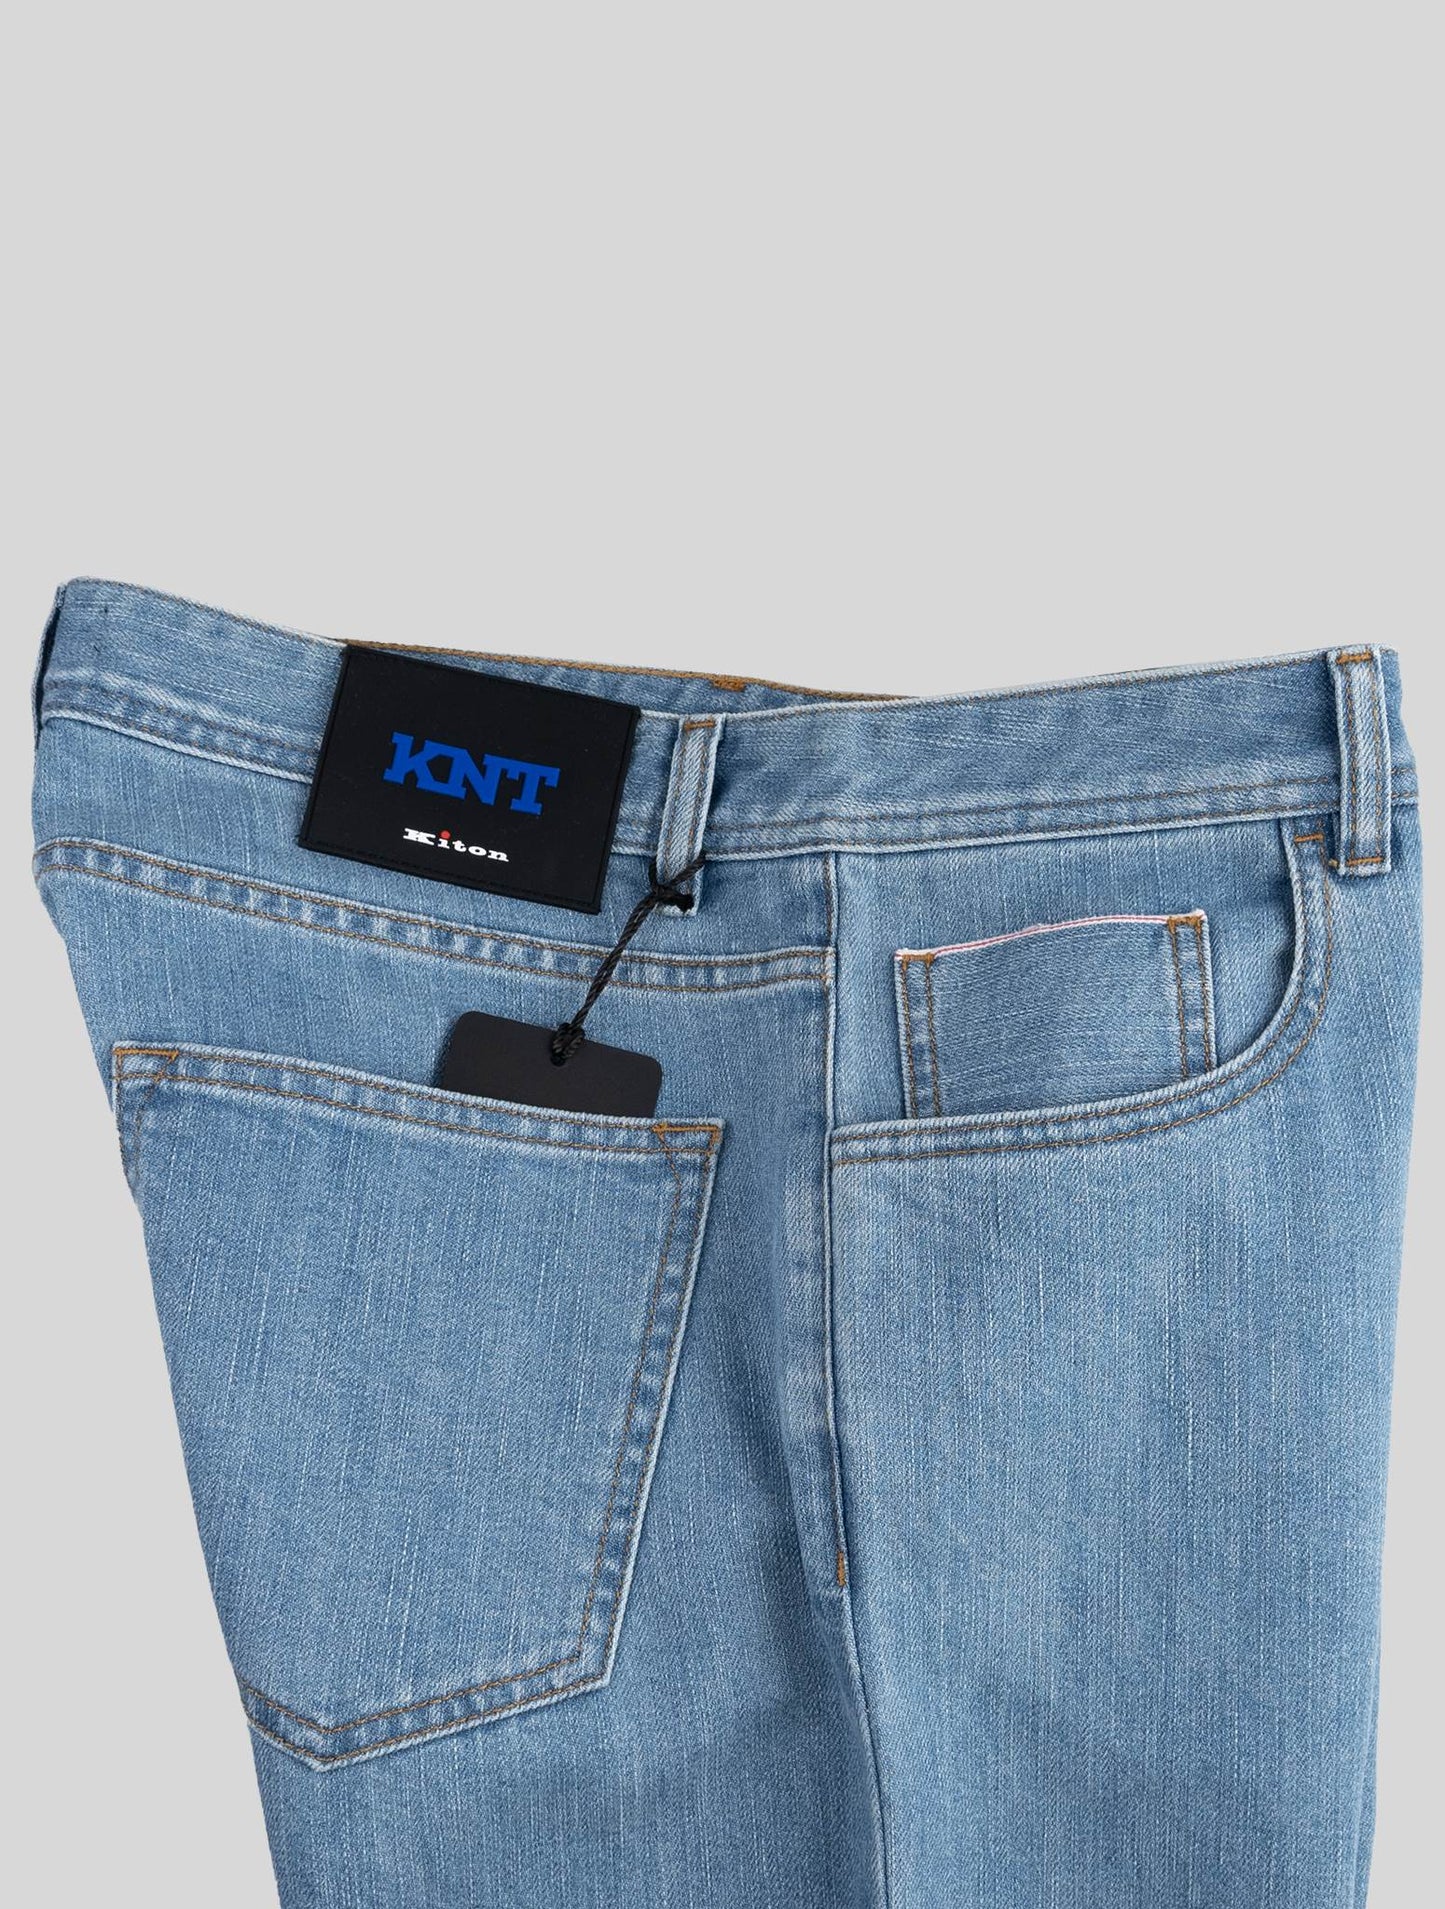 מכנסי ג 'ינס עם קיטון כחול בהיר